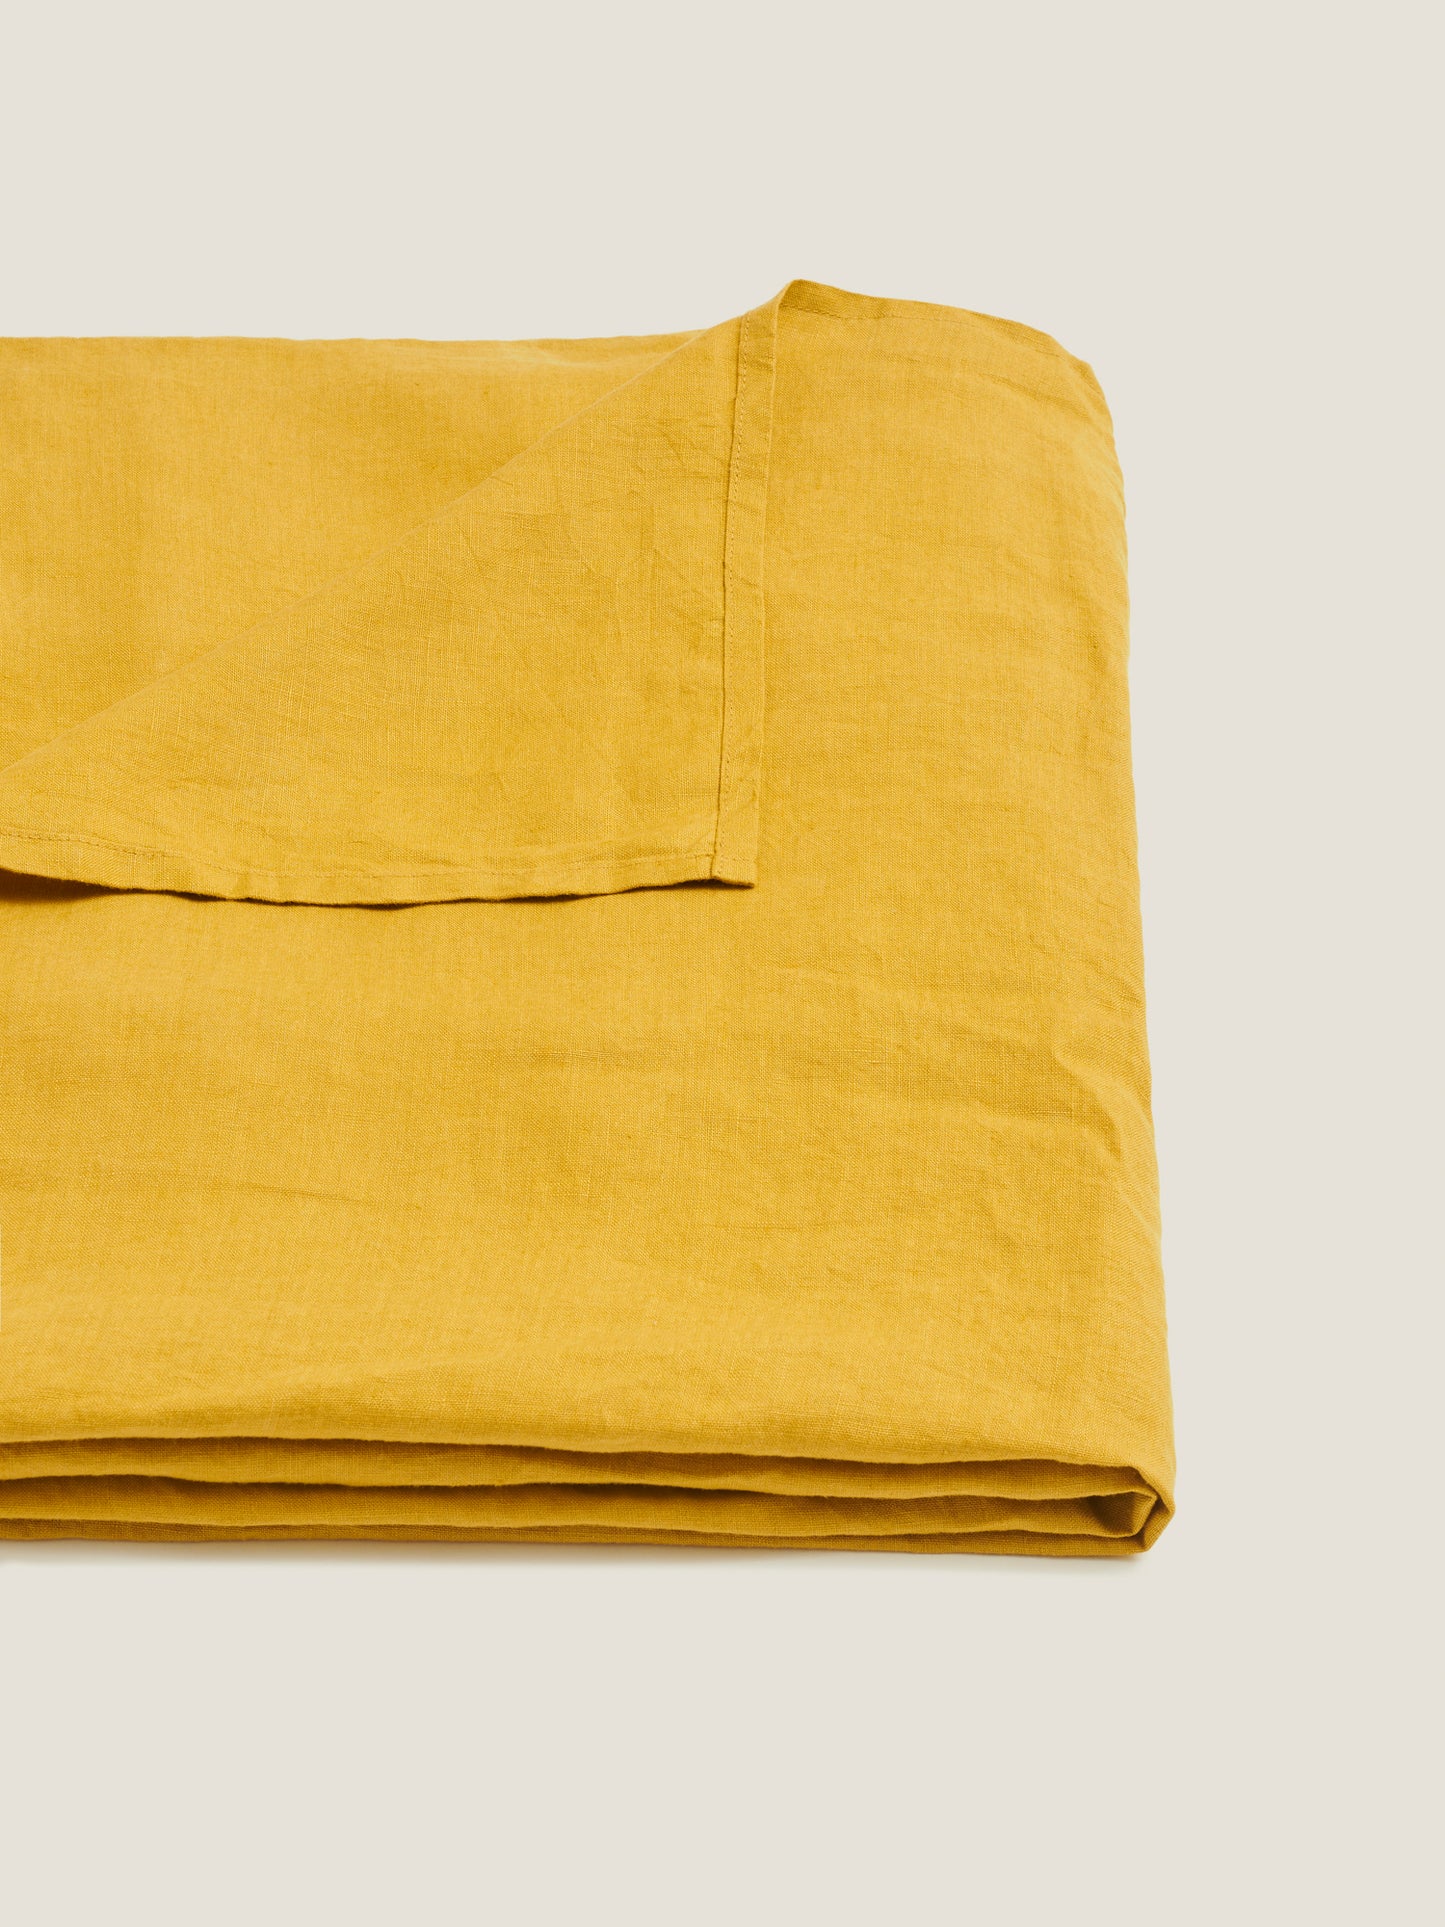 Linen Tablecloth in Ochre